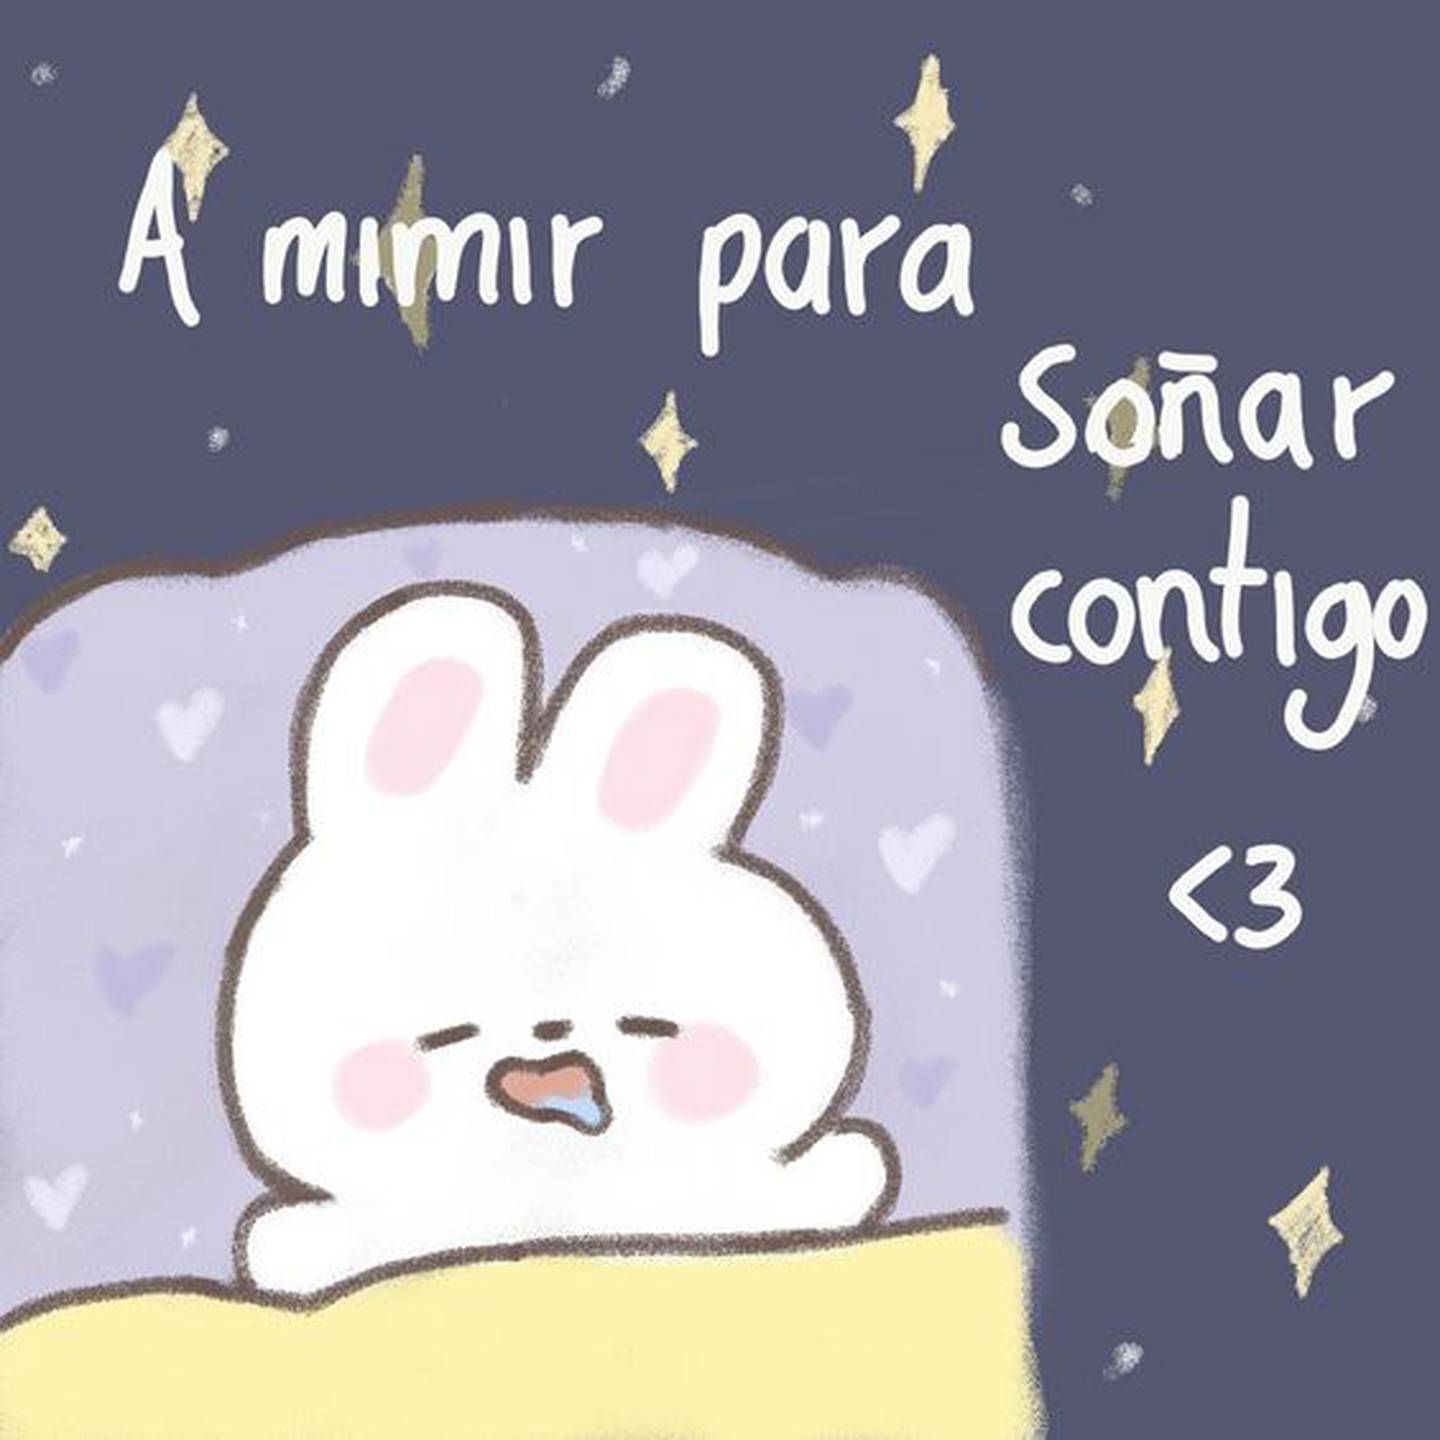 Conejo dibujado durmiendo con el texto "A mimir para soñar contigo" a un lado.